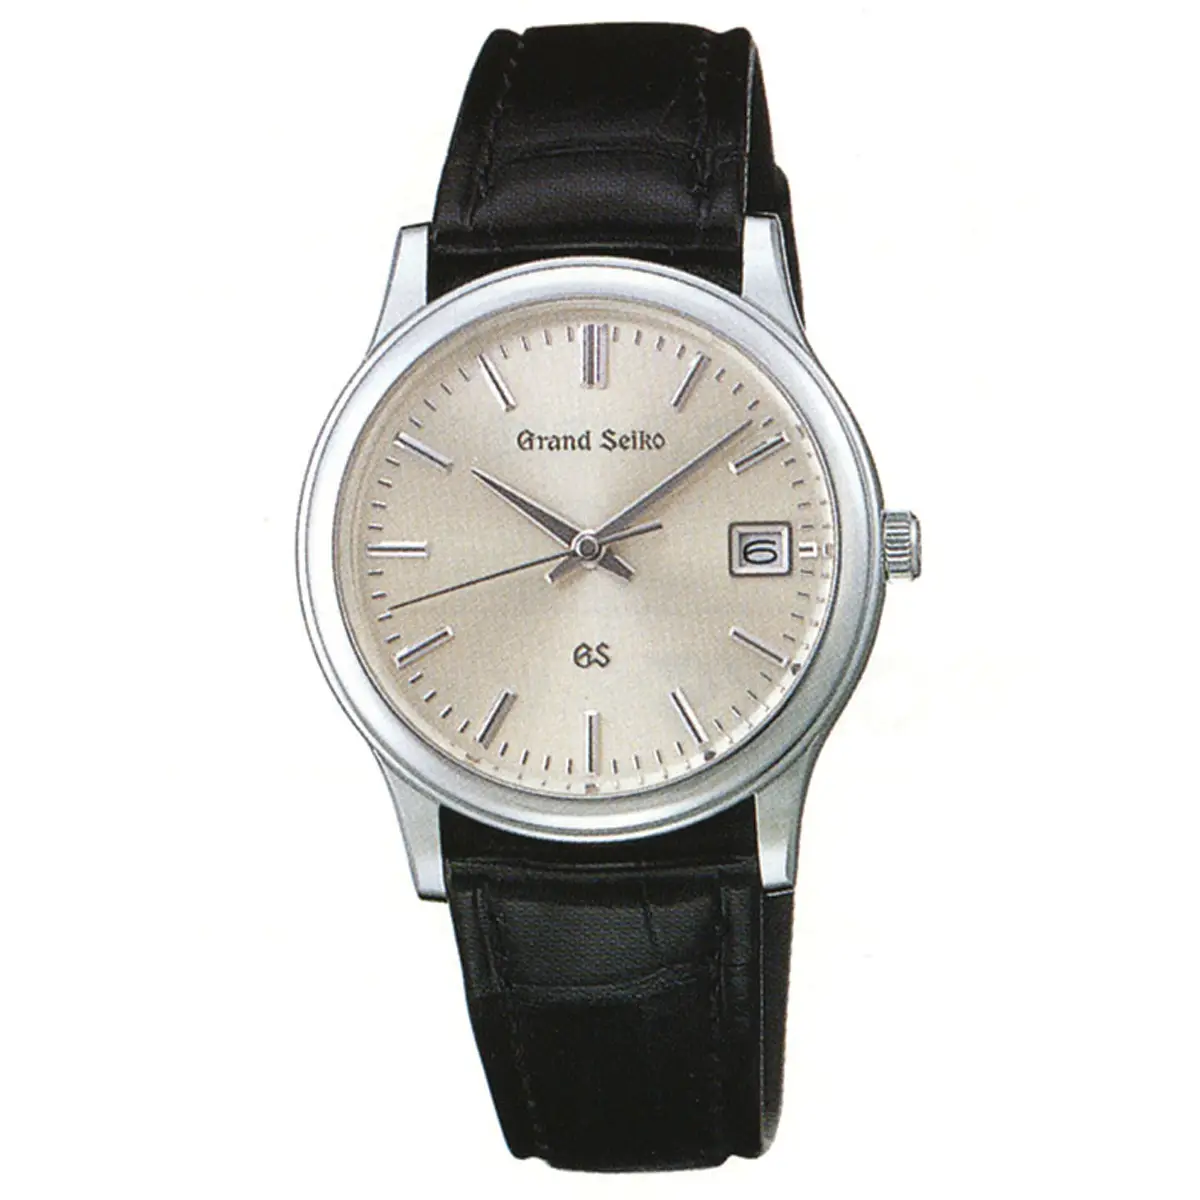 Đồng hồ Grand Seiko 9587-7000 Platinum SBGS005 mặt số màu bạc. Dây đeo bằng da. Thân vỏ bằng platinum.